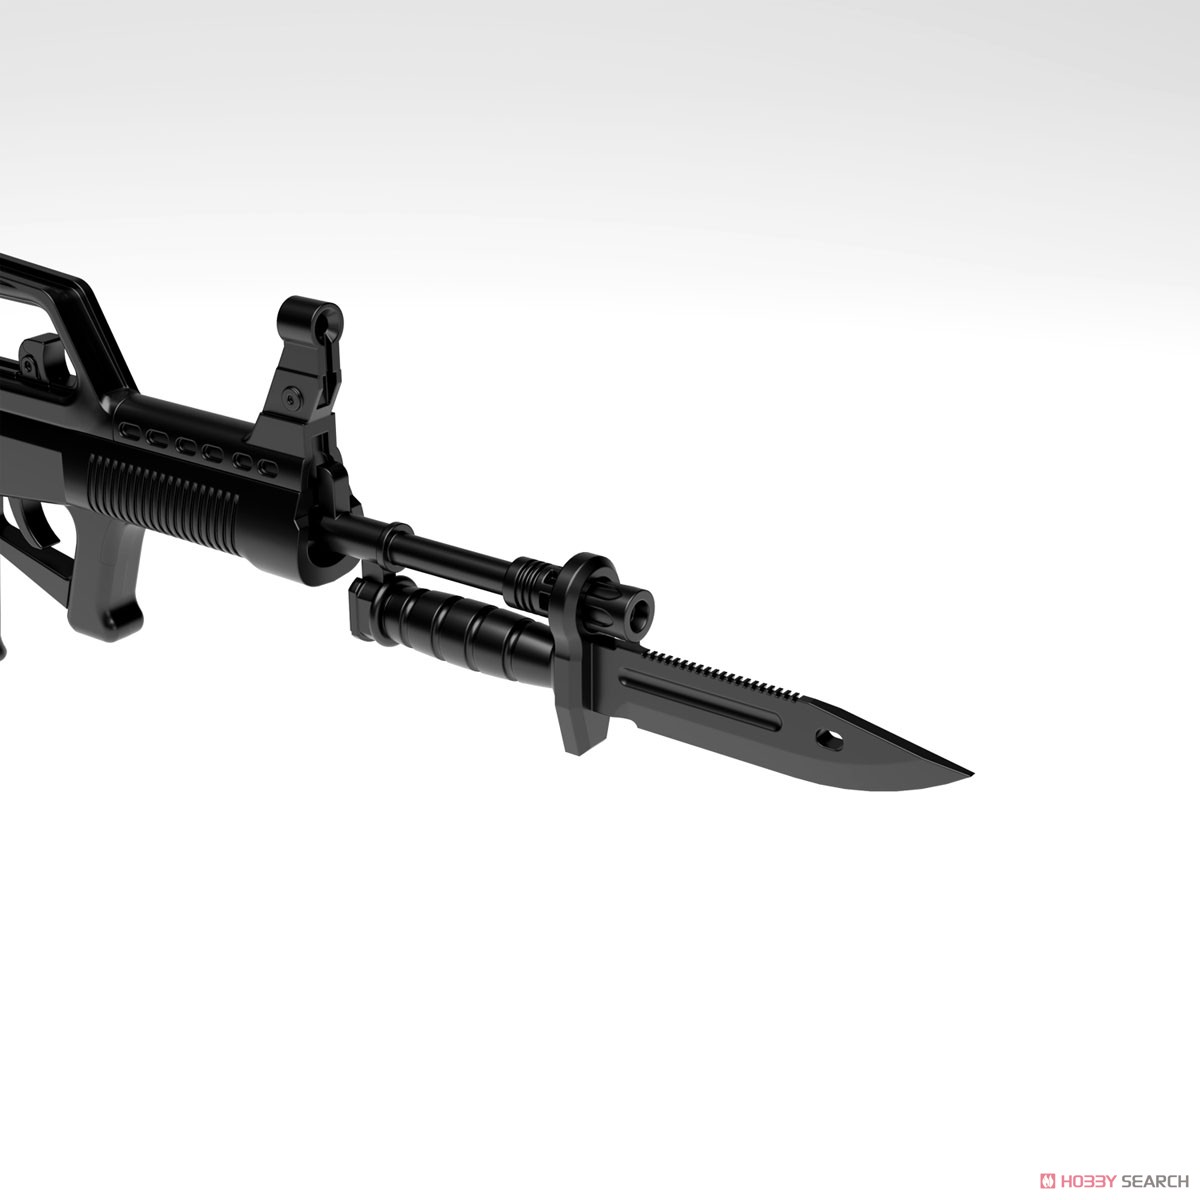 リトルアーモリー LADF01『ドールズフロントライン95式自動歩槍タイプ』1/12 プラモデル-009